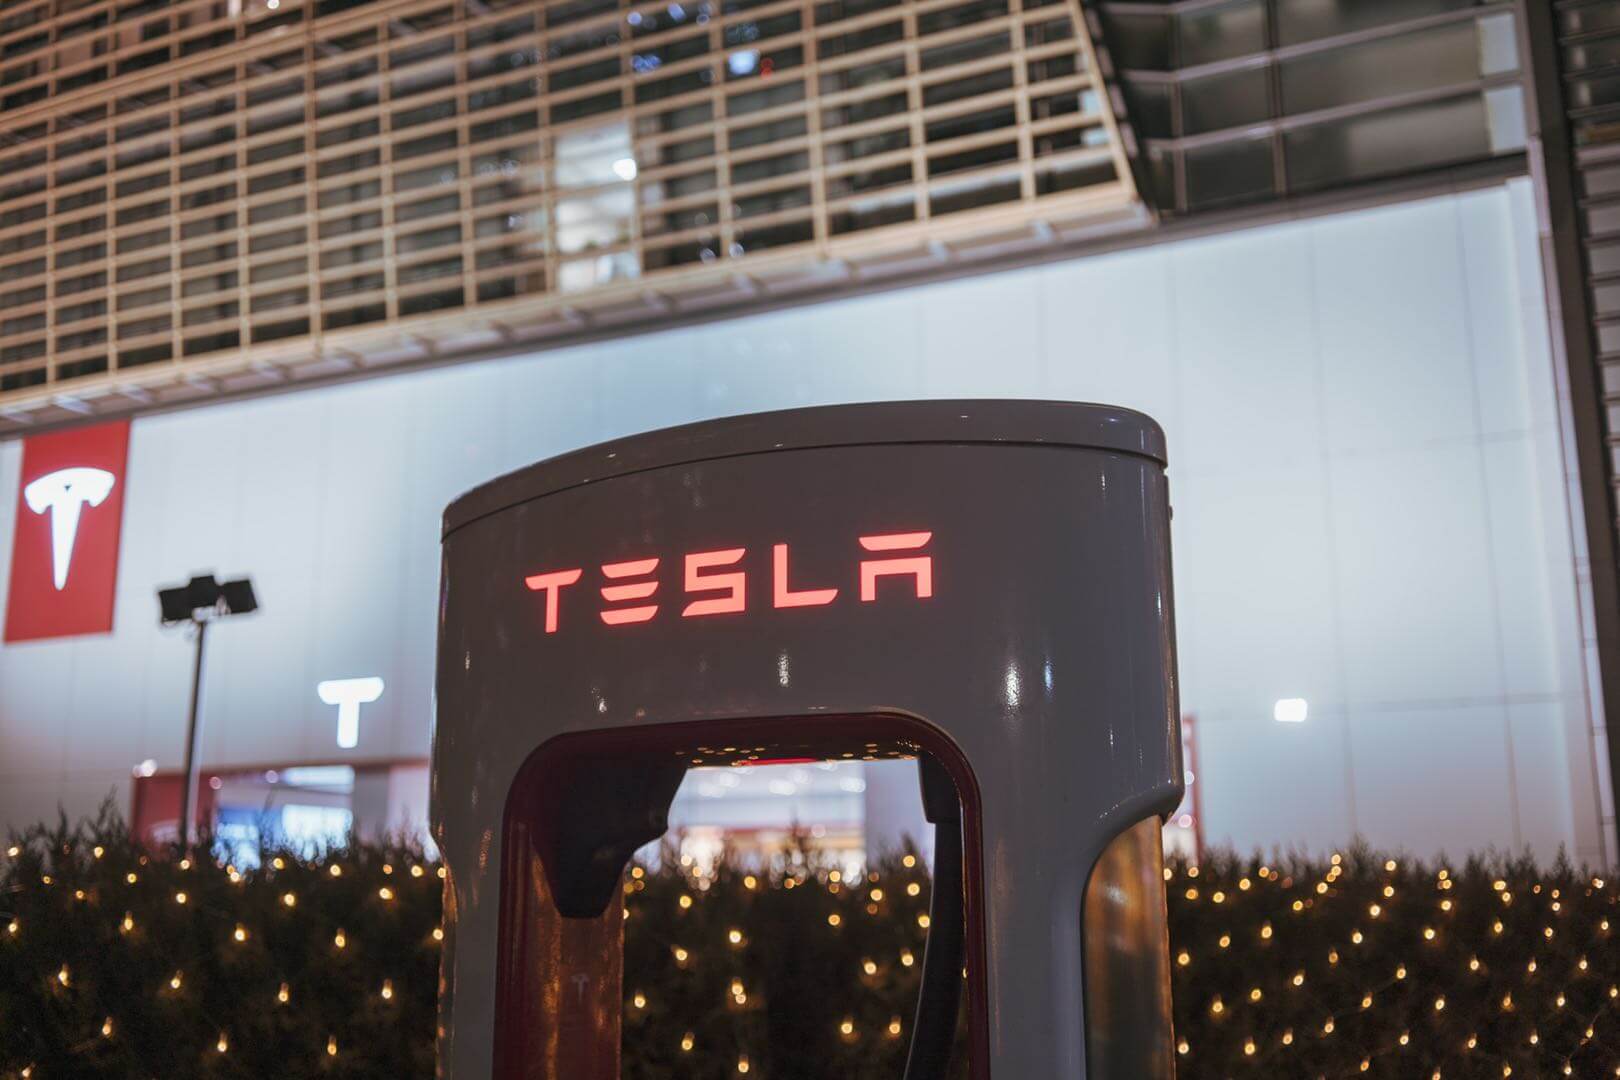 Программа членства Tesla Supercharger угрожает конкурентам, занимающимся зарядкой электромобилей